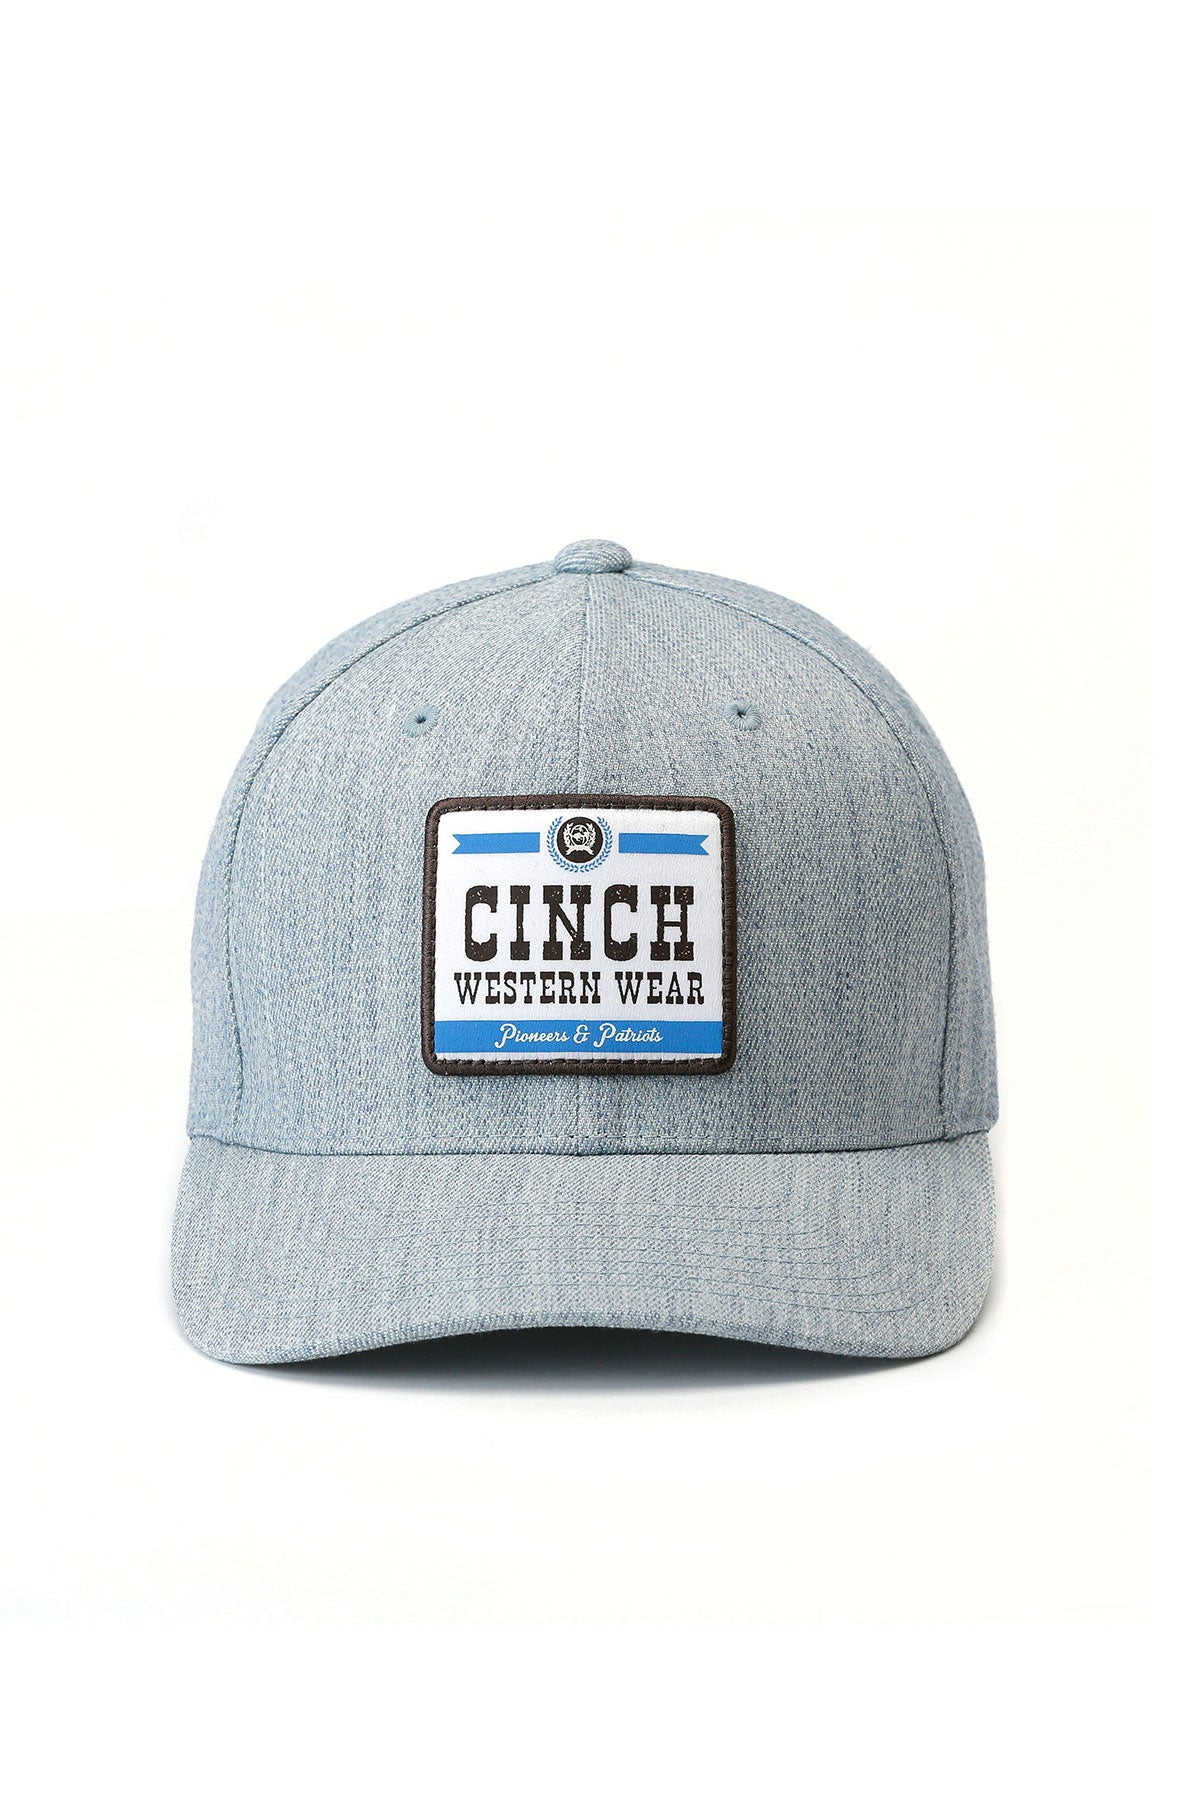 CINCH MEN'S CINCH WESTERN WEAR CAP - HEATHER BLUE